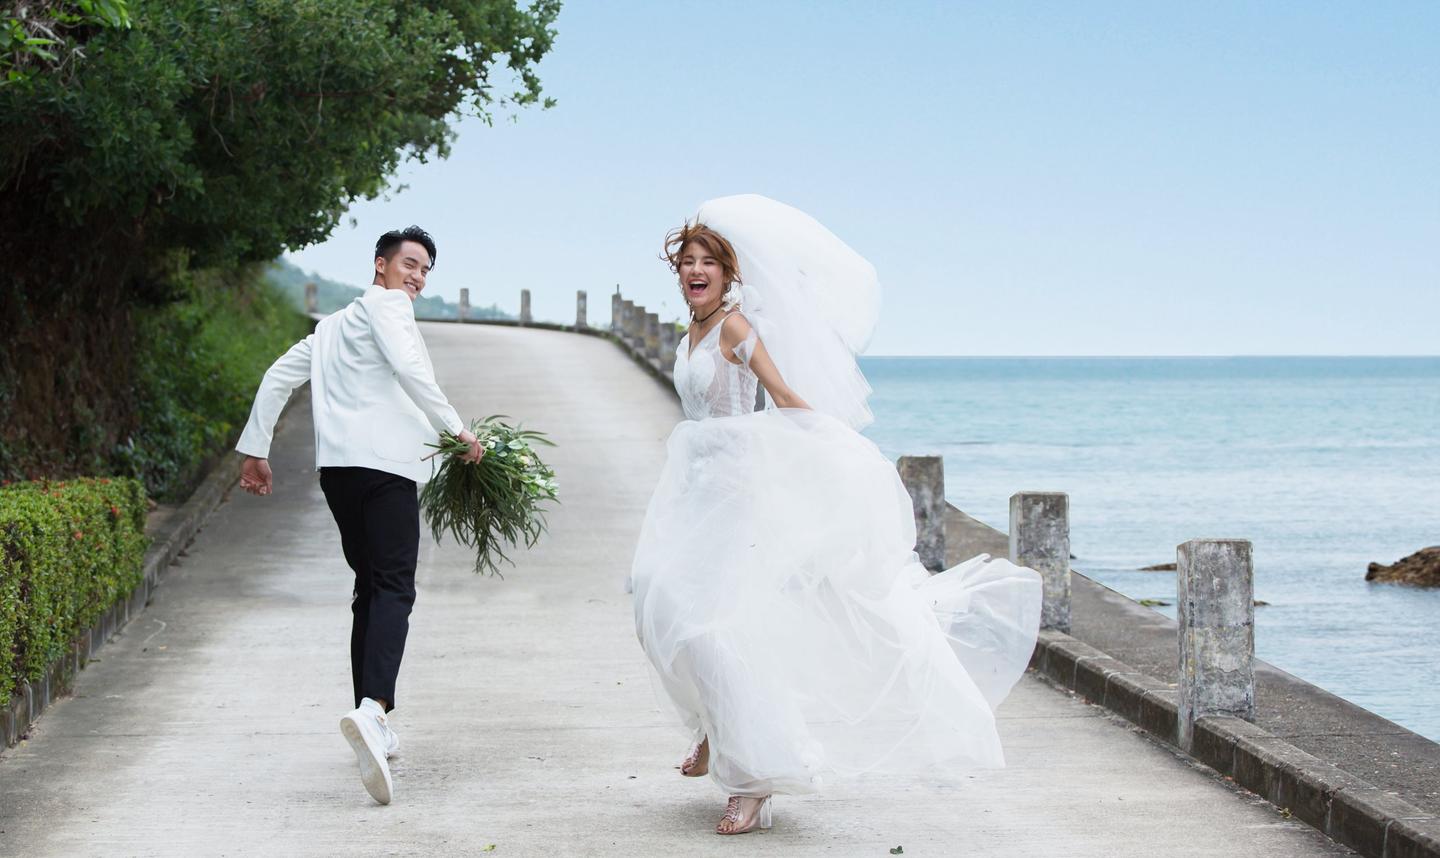 2020流行什么样的婚纱照主题,关于郑州婚纱摄影排名的